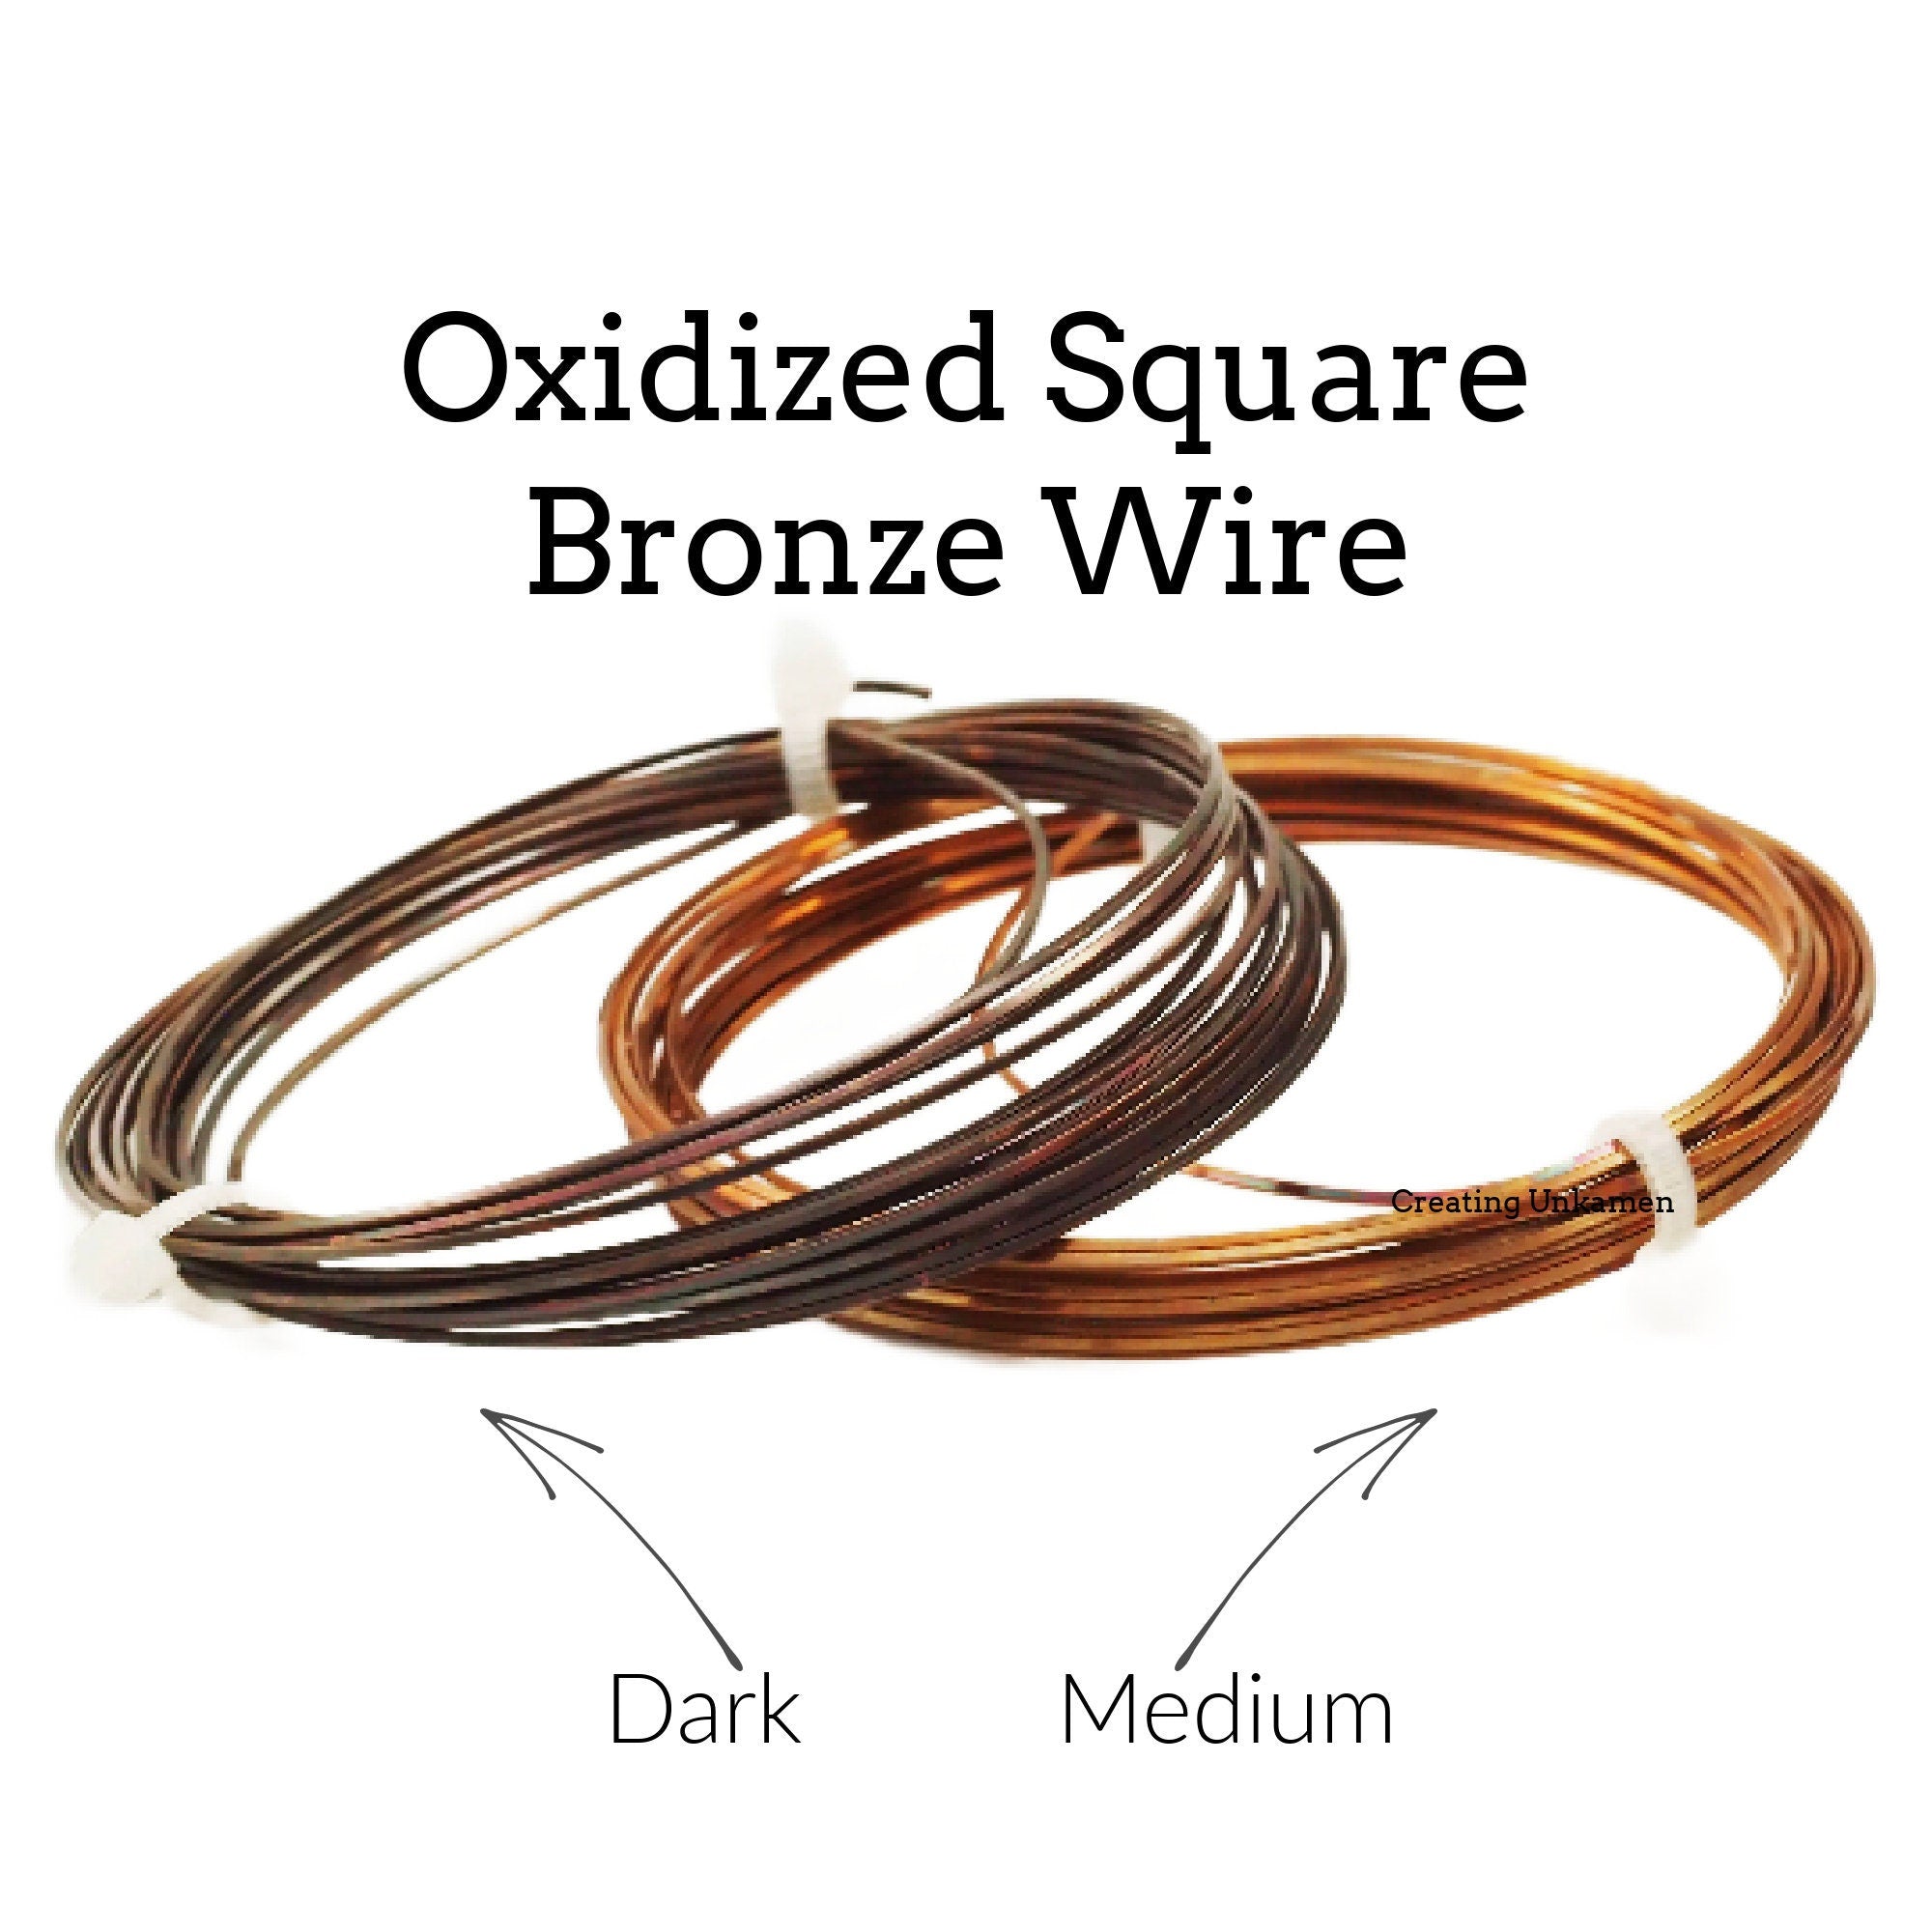  Bronze Wire